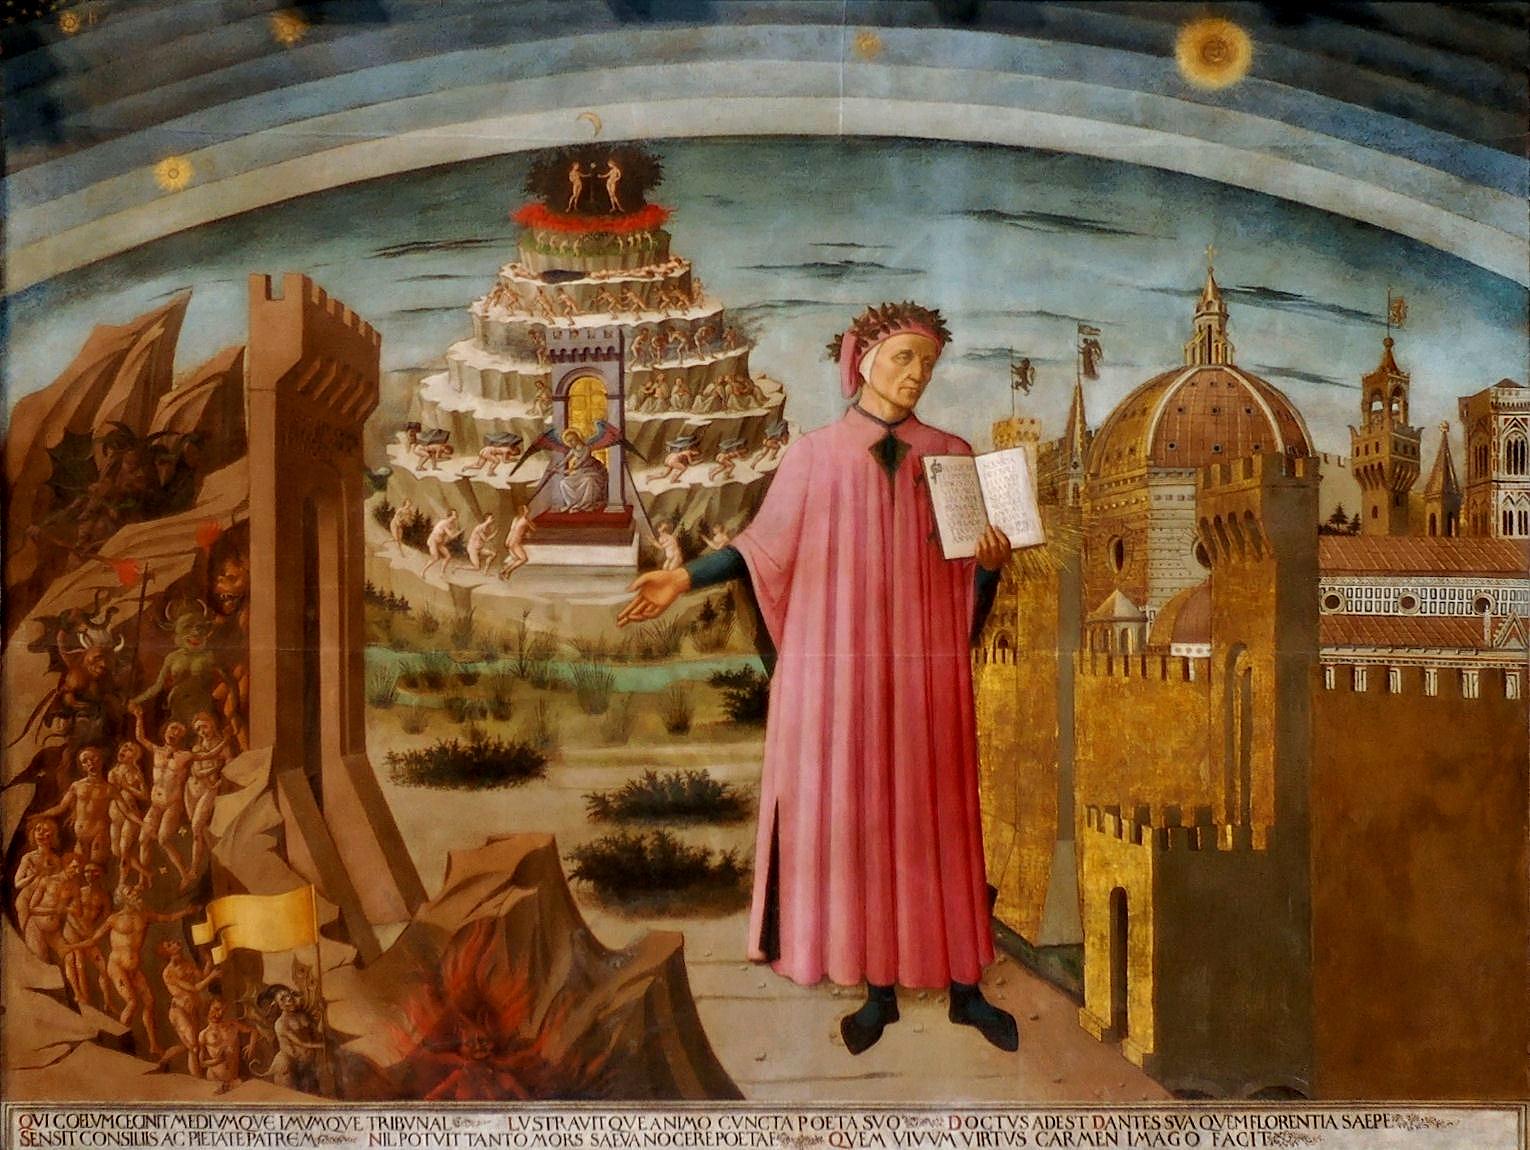 I Domenico di Michelinos tavla från 1465 ses Dante stå med ett exemplar av ”Den gudomliga komedin” vid helvetets portar.